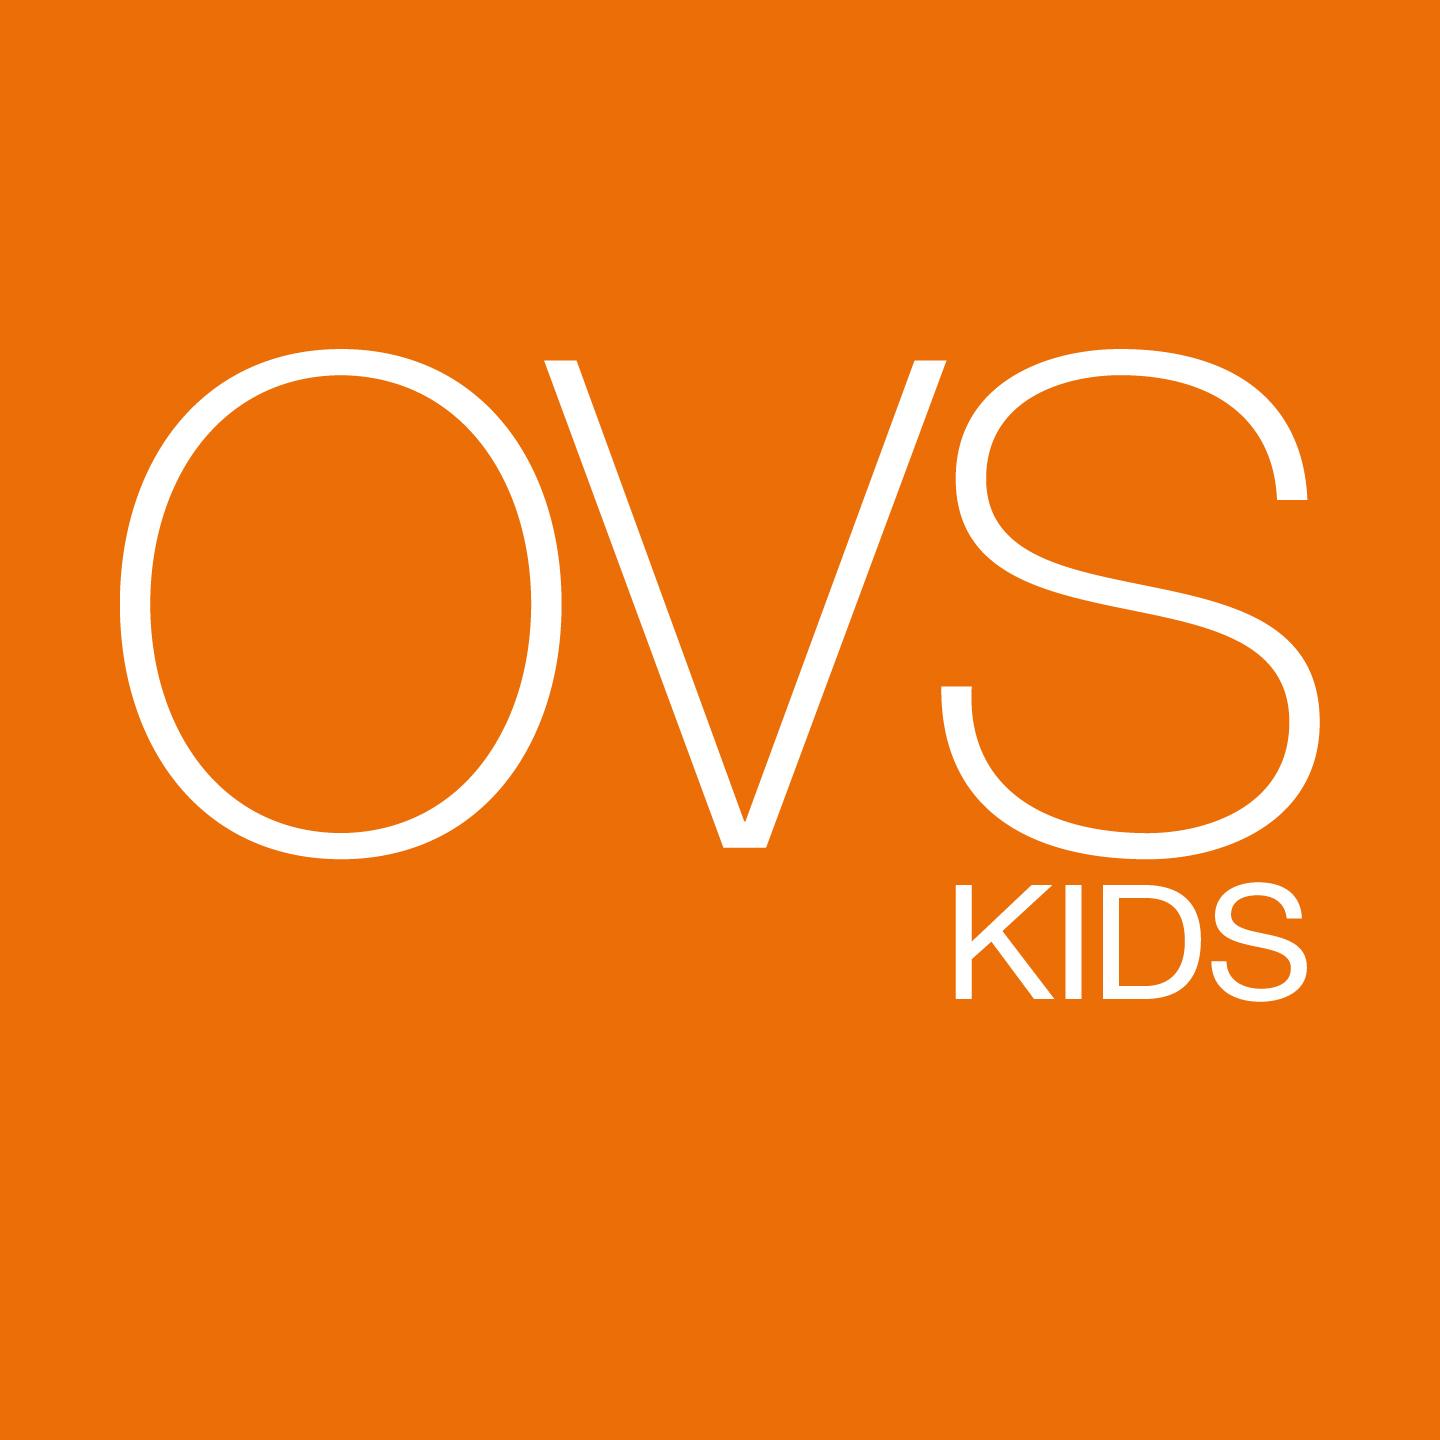 OVS, la mode pour enfant, veut retenter sa chance en France